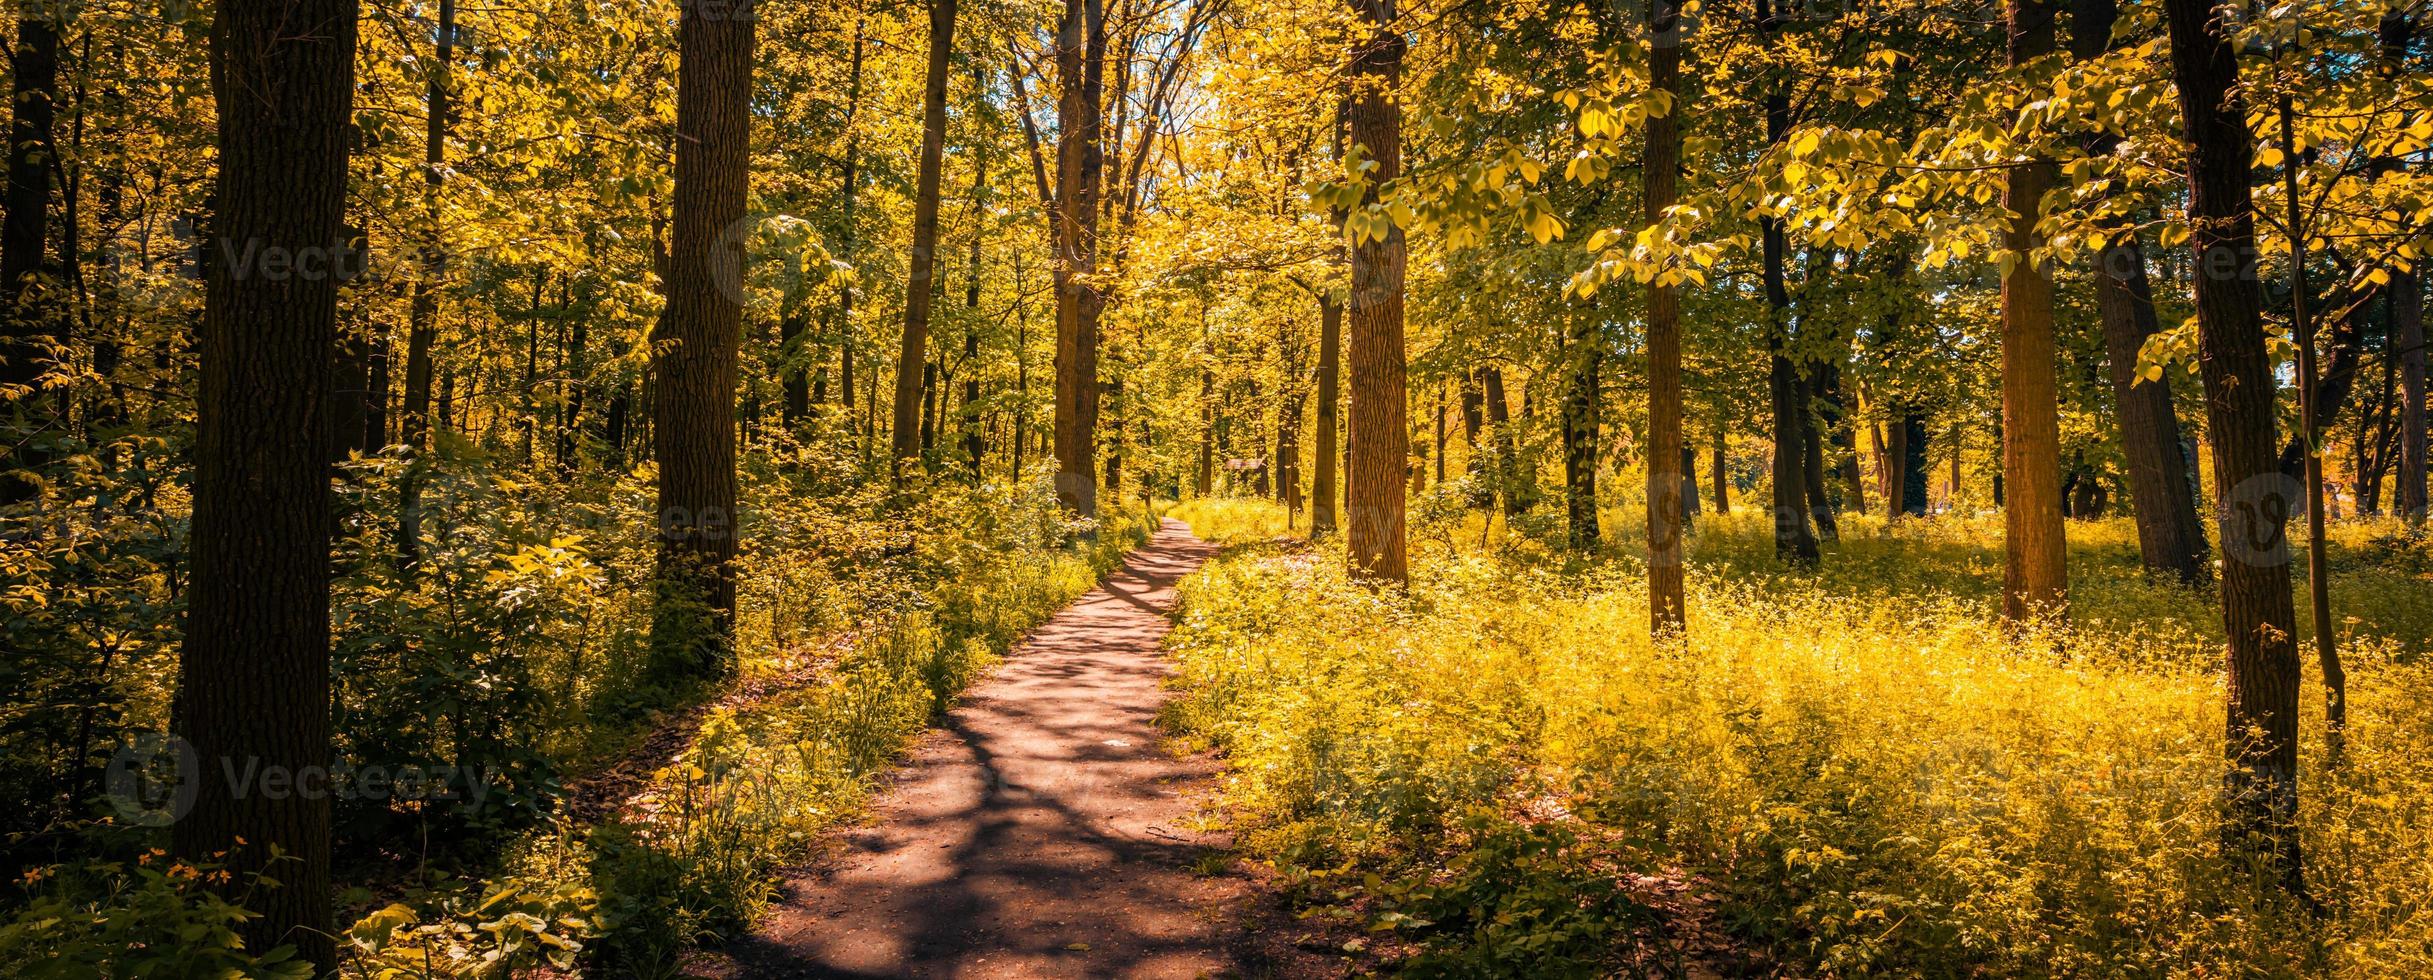 tranquillo sentiero in un parco in autunno, con fasci di luce che cadono tra gli alberi. incredibile paesaggio naturale, avventura escursionistica, passeggiata per la libertà, erba e alberi con foglie colorate foto